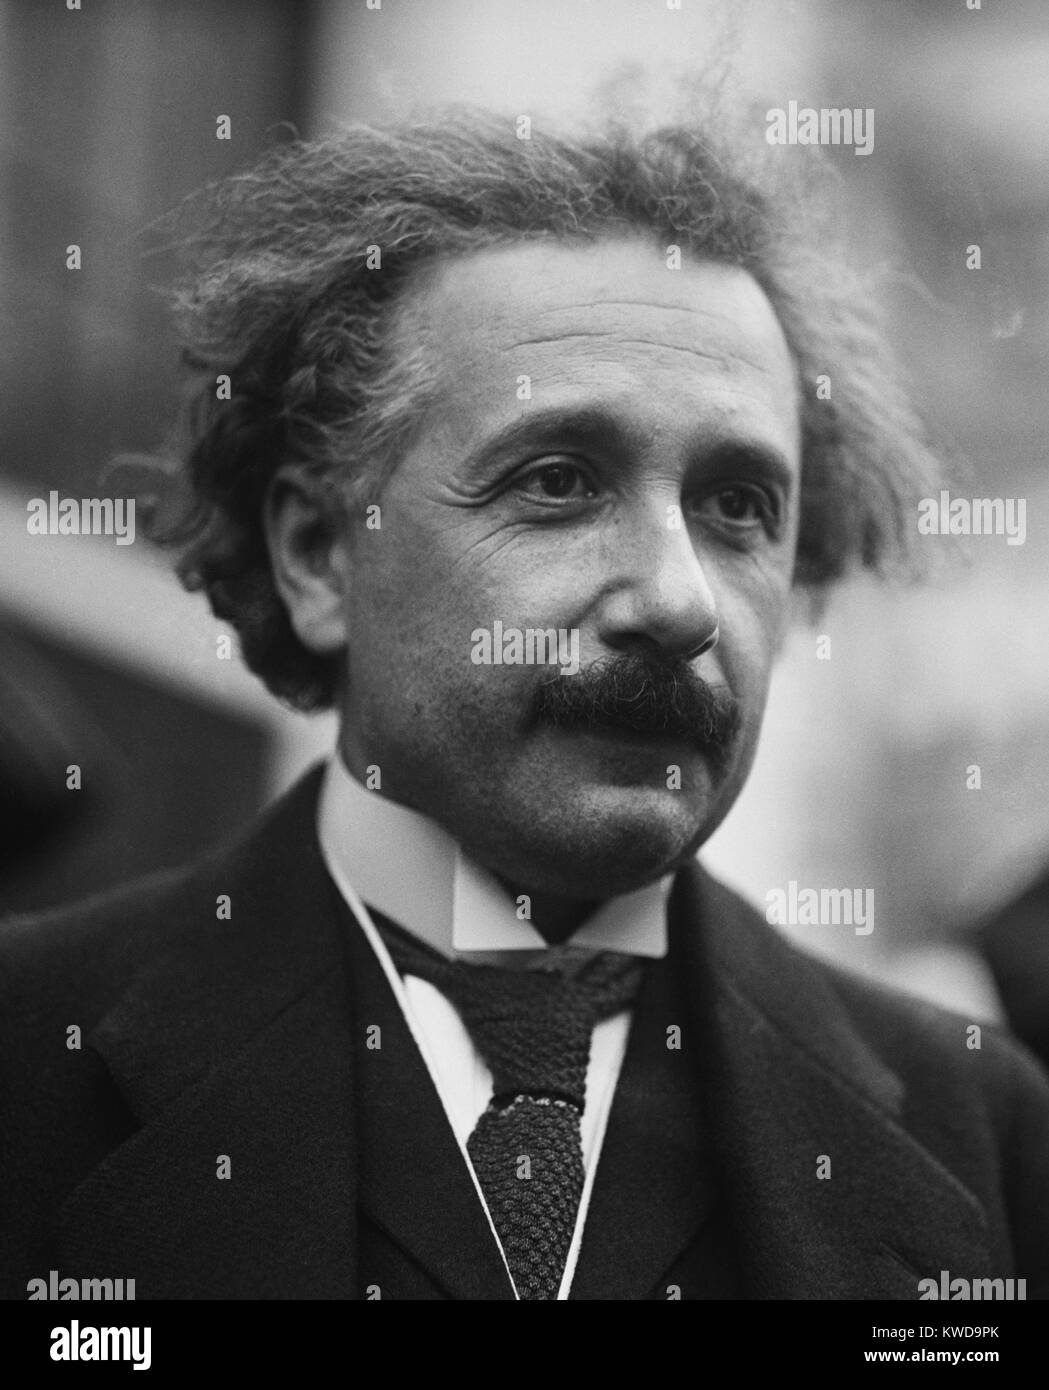 Albert Einstein, deutscher theoretischer Physiker in Washington, D.C., den 25. April 1921. Während seiner ersten Reise in die USA er mit Präsident Harding met und der Nationalen Akademie der Wissenschaft gerichtet. Später im Jahr 1921 erhielt er den Nobelpreis für Physik (BSLOC 2016 10 5) Stockfoto